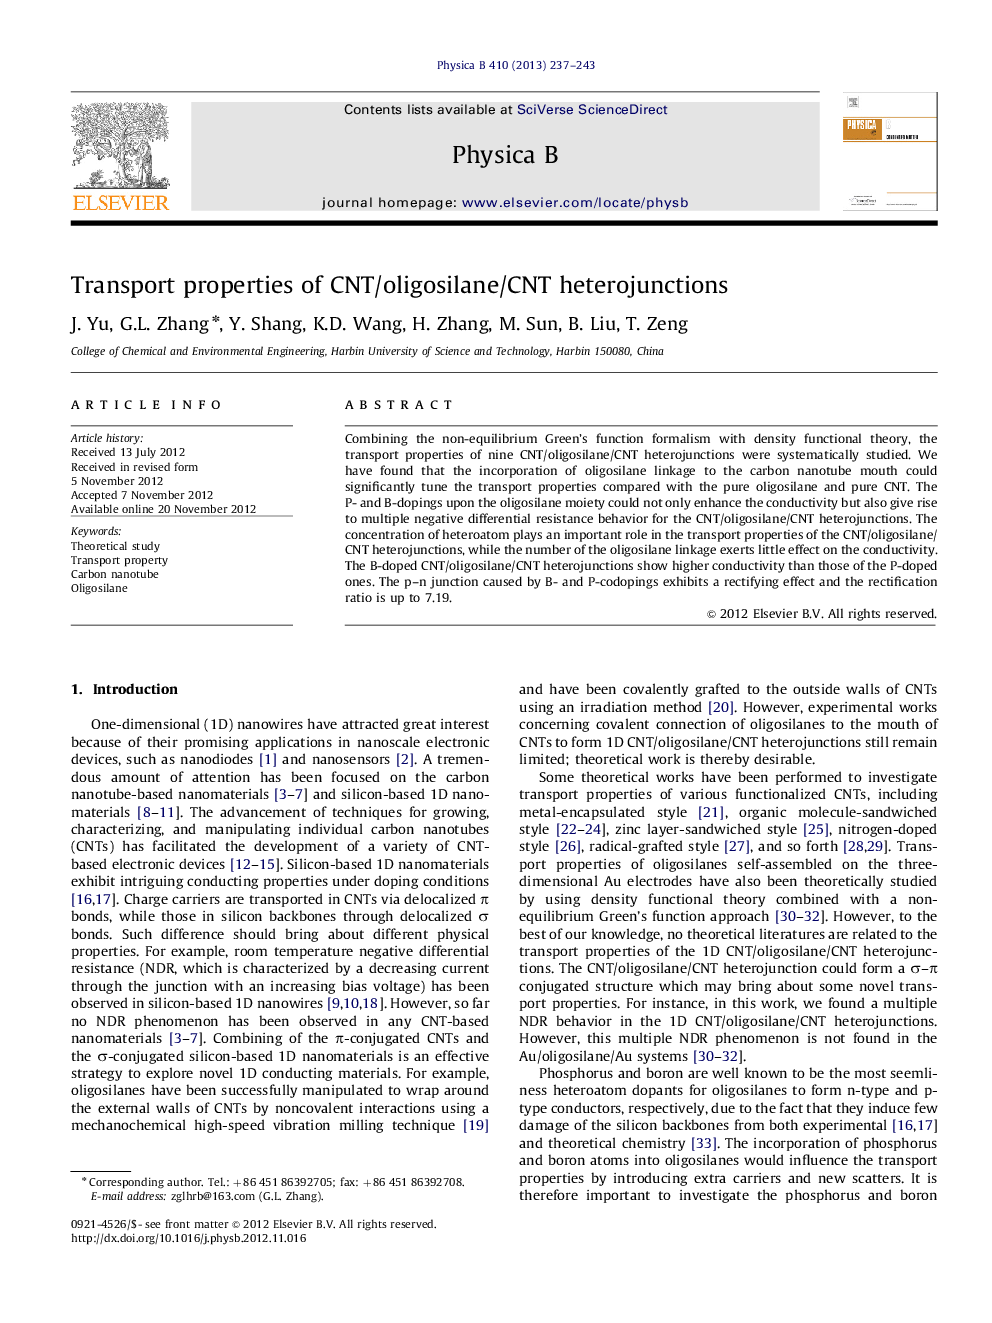 Transport properties of CNT/oligosilane/CNT heterojunctions